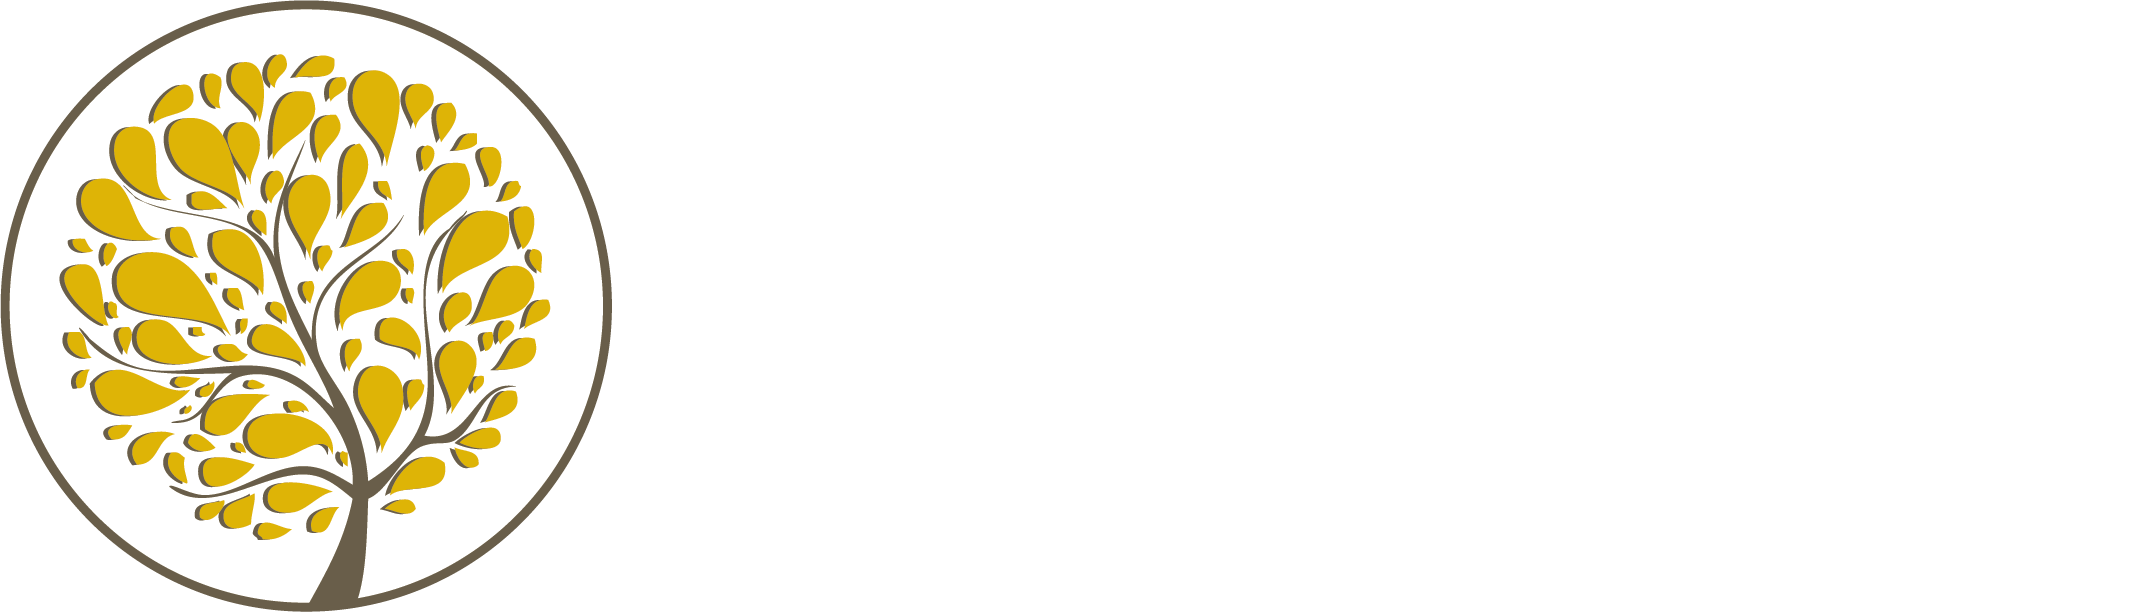 Mason Health and Rehabilitation - Mason Health and Rehabilitation Center